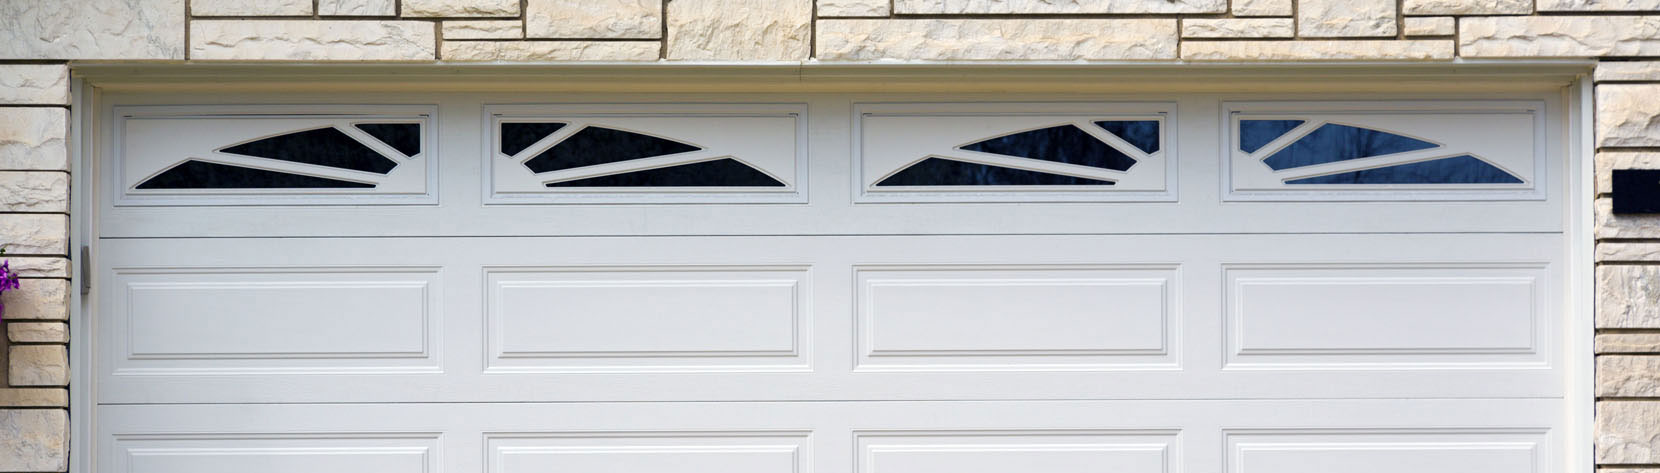 How To Fix Uneven Garage Door, Fixing Uneven Garage Door